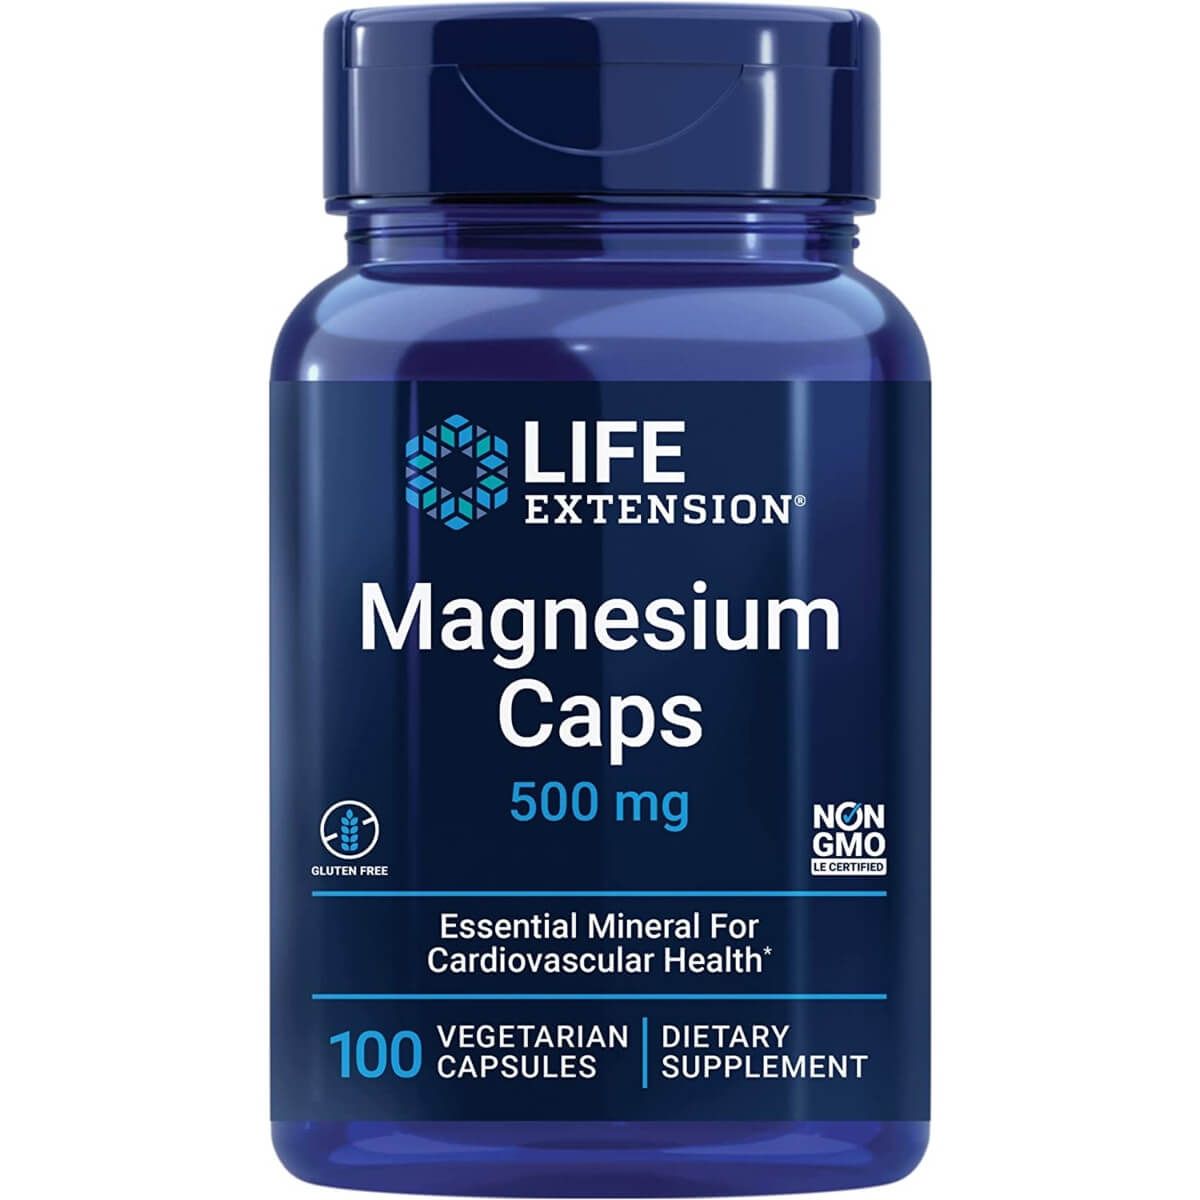 Photos - Vitamins & Minerals Life Extension Magnesium Caps 500 mg 100 Vegetarian Capsules PBW-P32910 